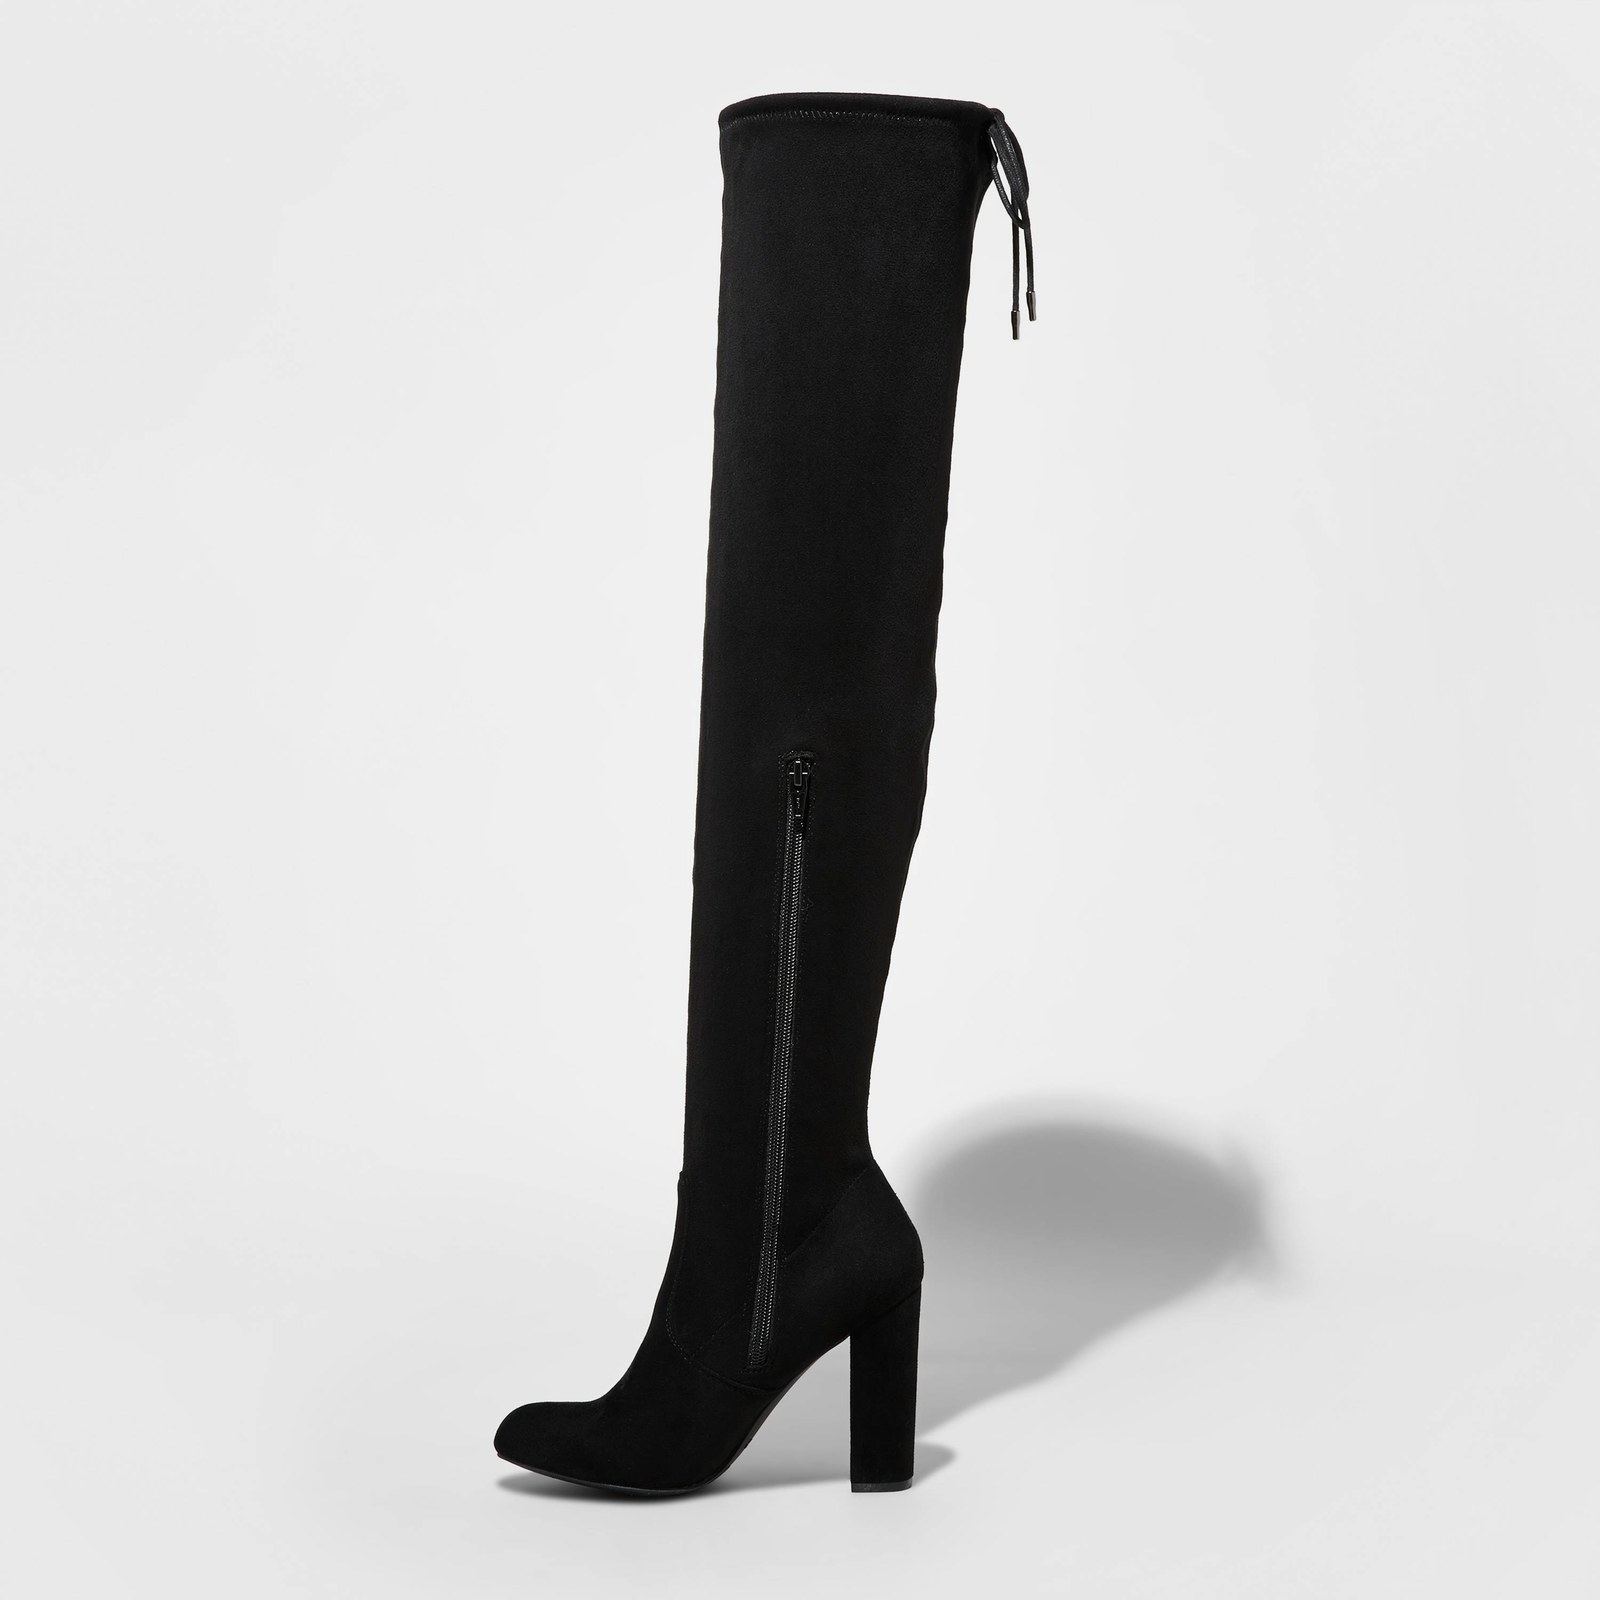 target black bootie heels